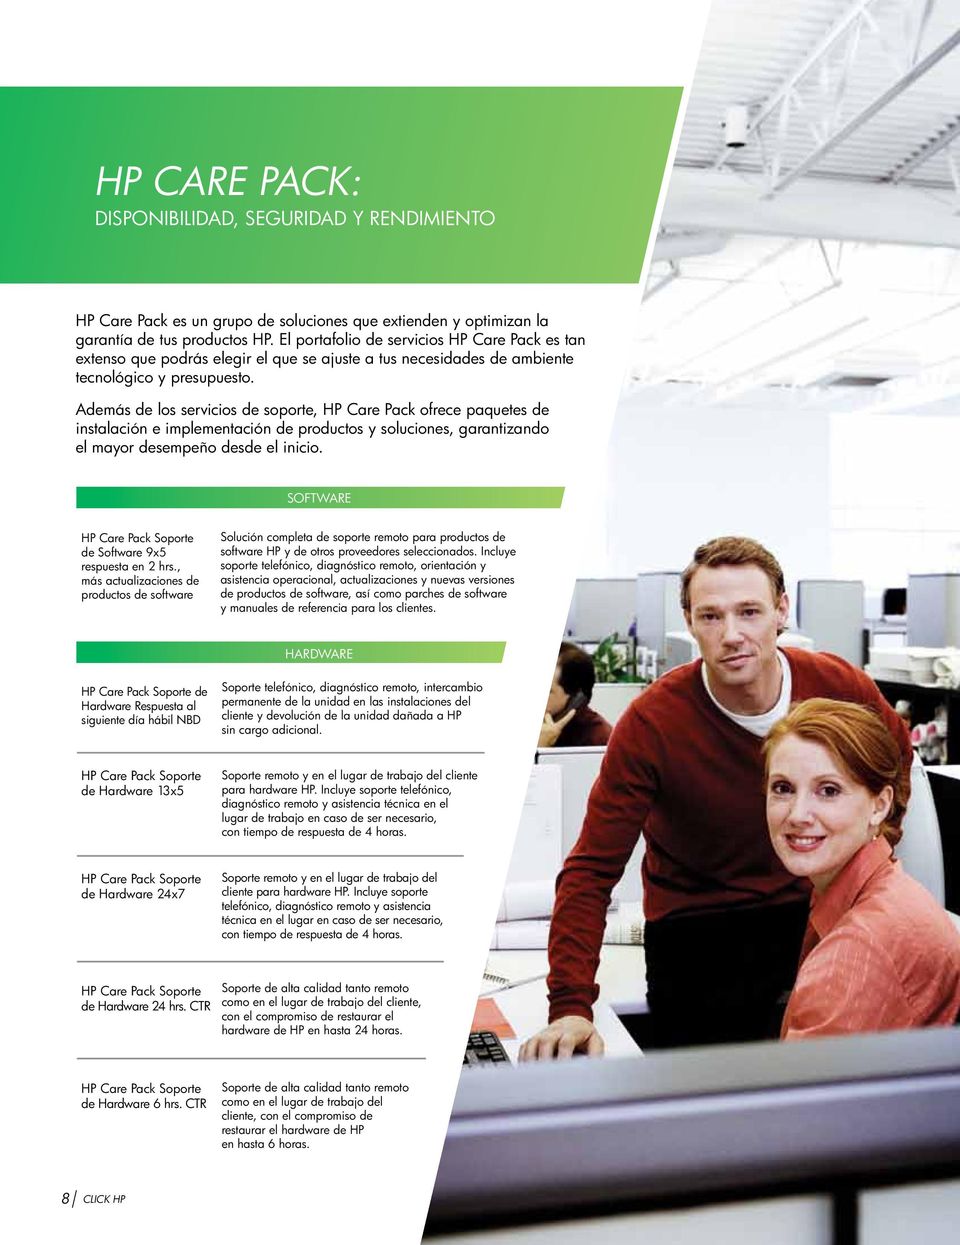 Además de los servicios de soporte, HP Care Pack ofrece paquetes de instalación e implementación de productos y soluciones, garantizando el mayor desempeño desde el inicio.